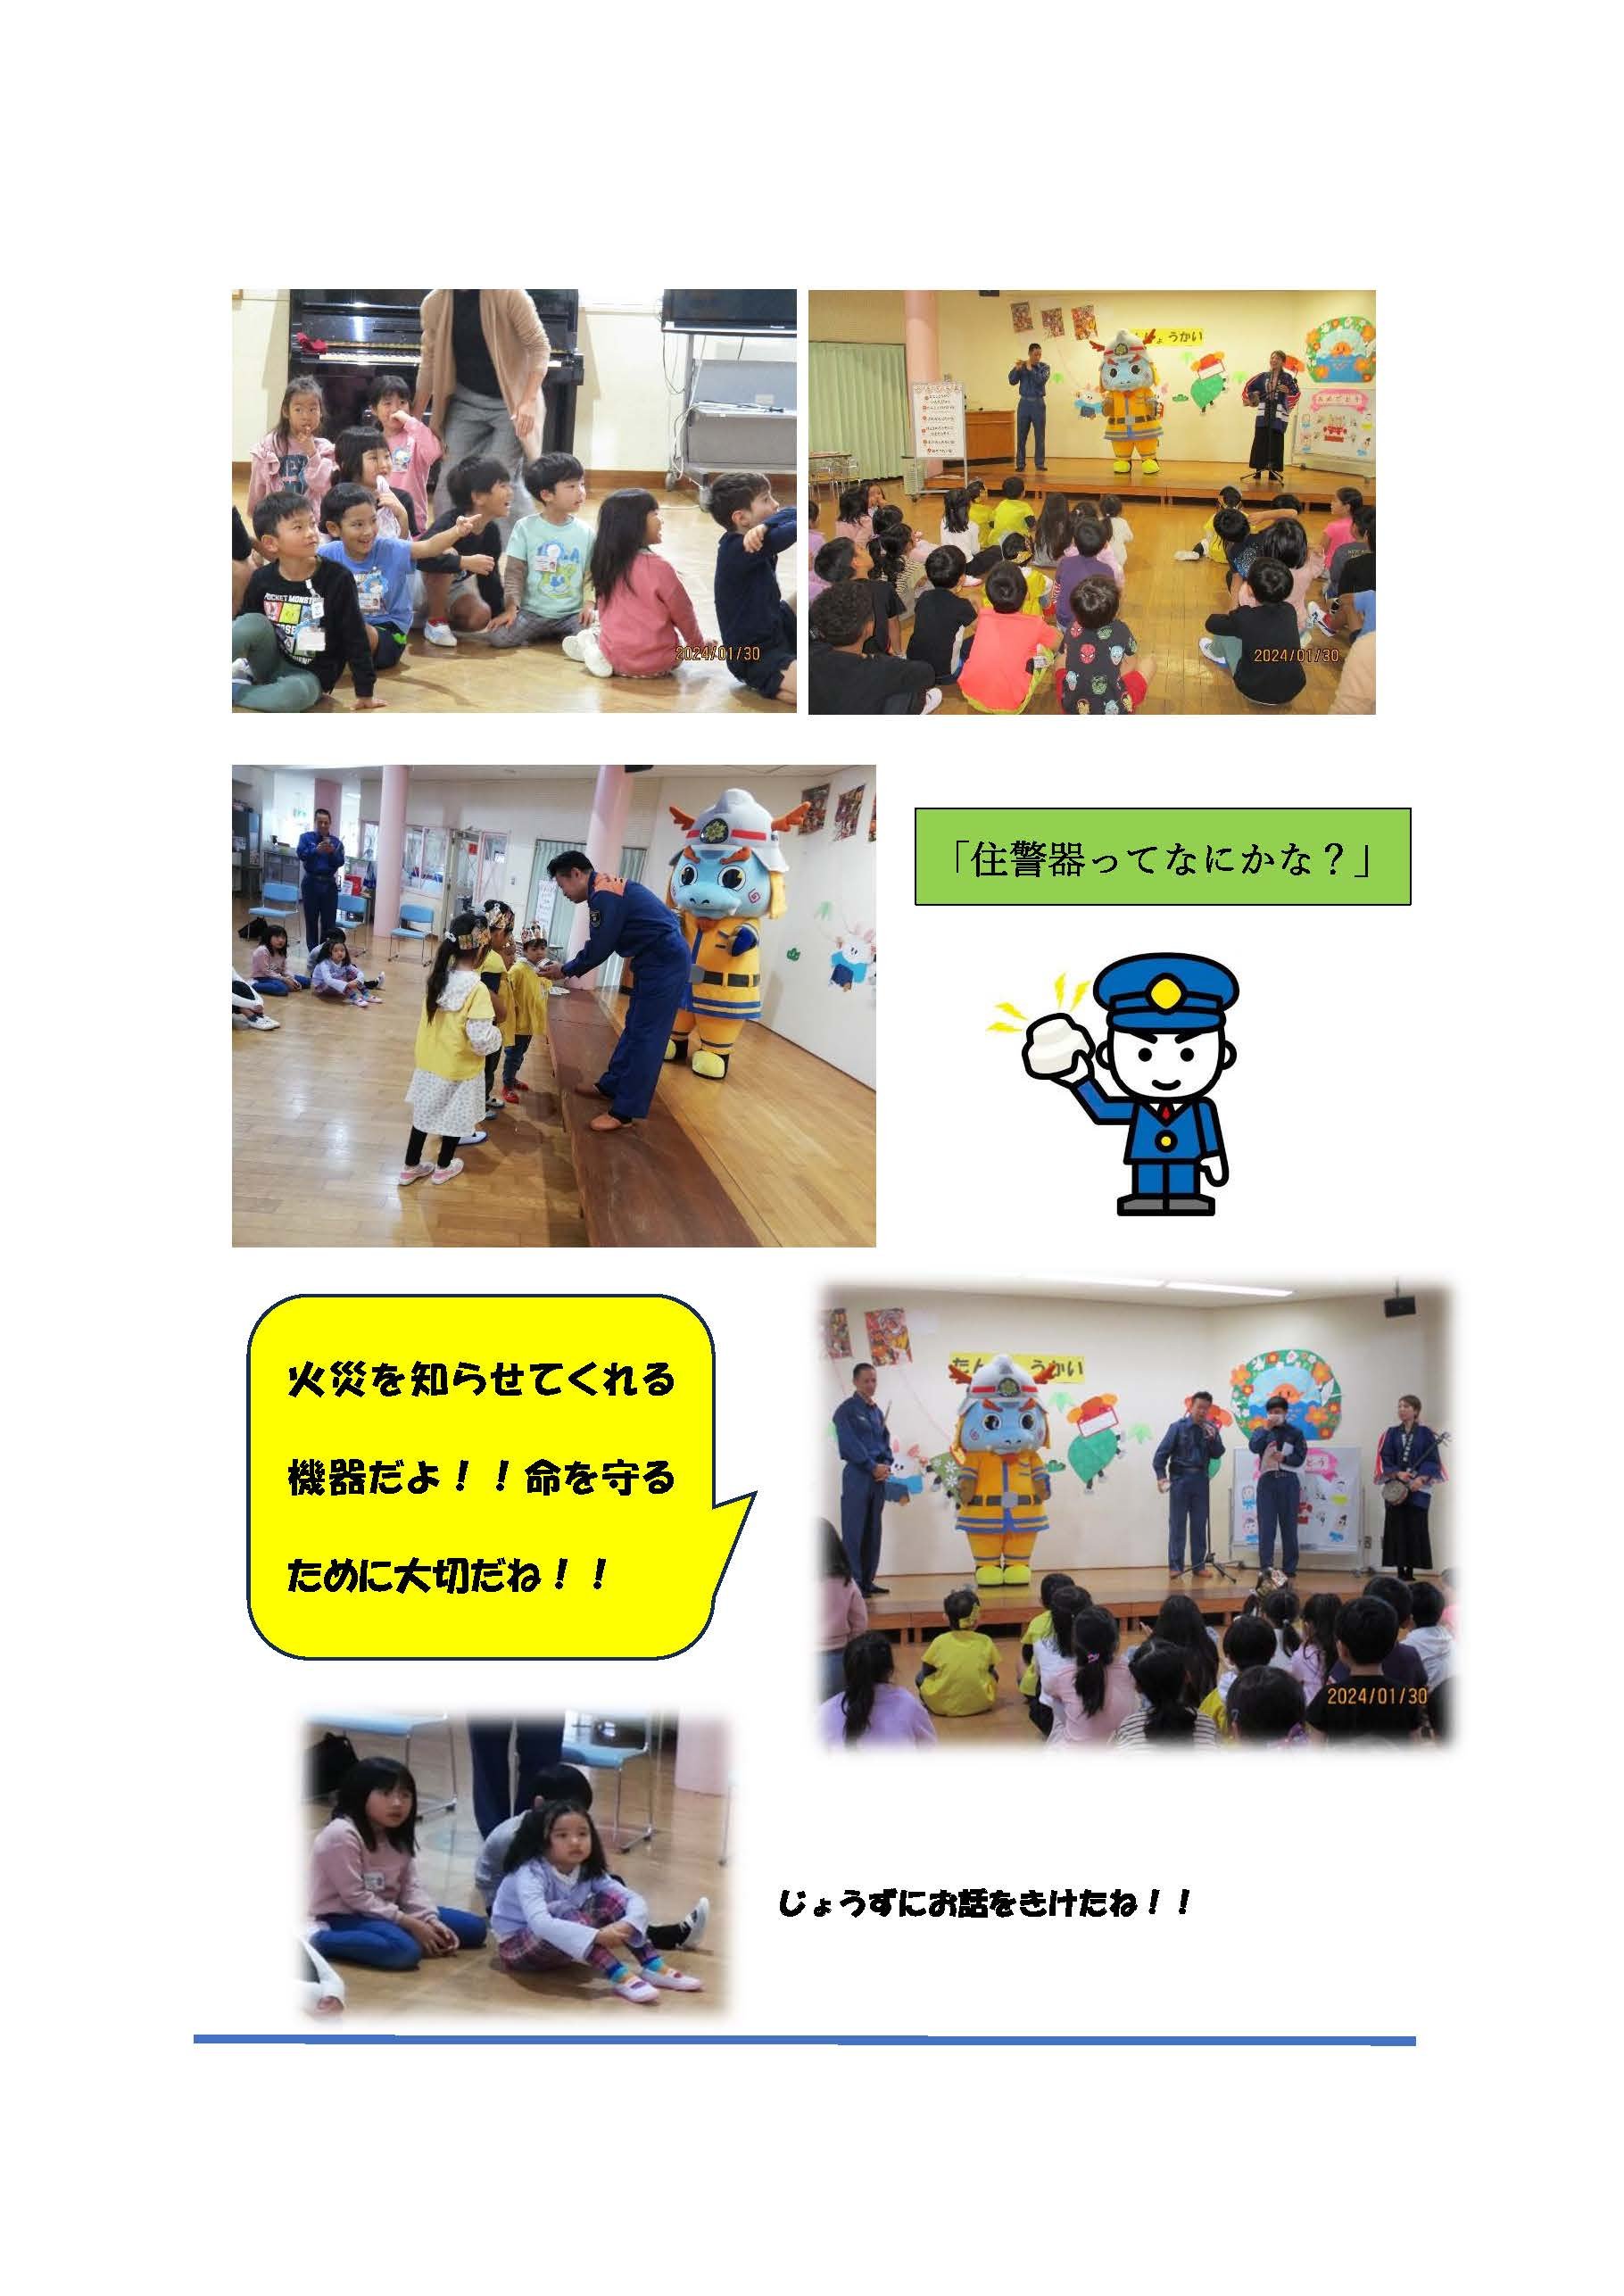 資料2　読谷渡慶次幼稚園で住警器普及促進広報活動を実施しました_ページ_2.jpg